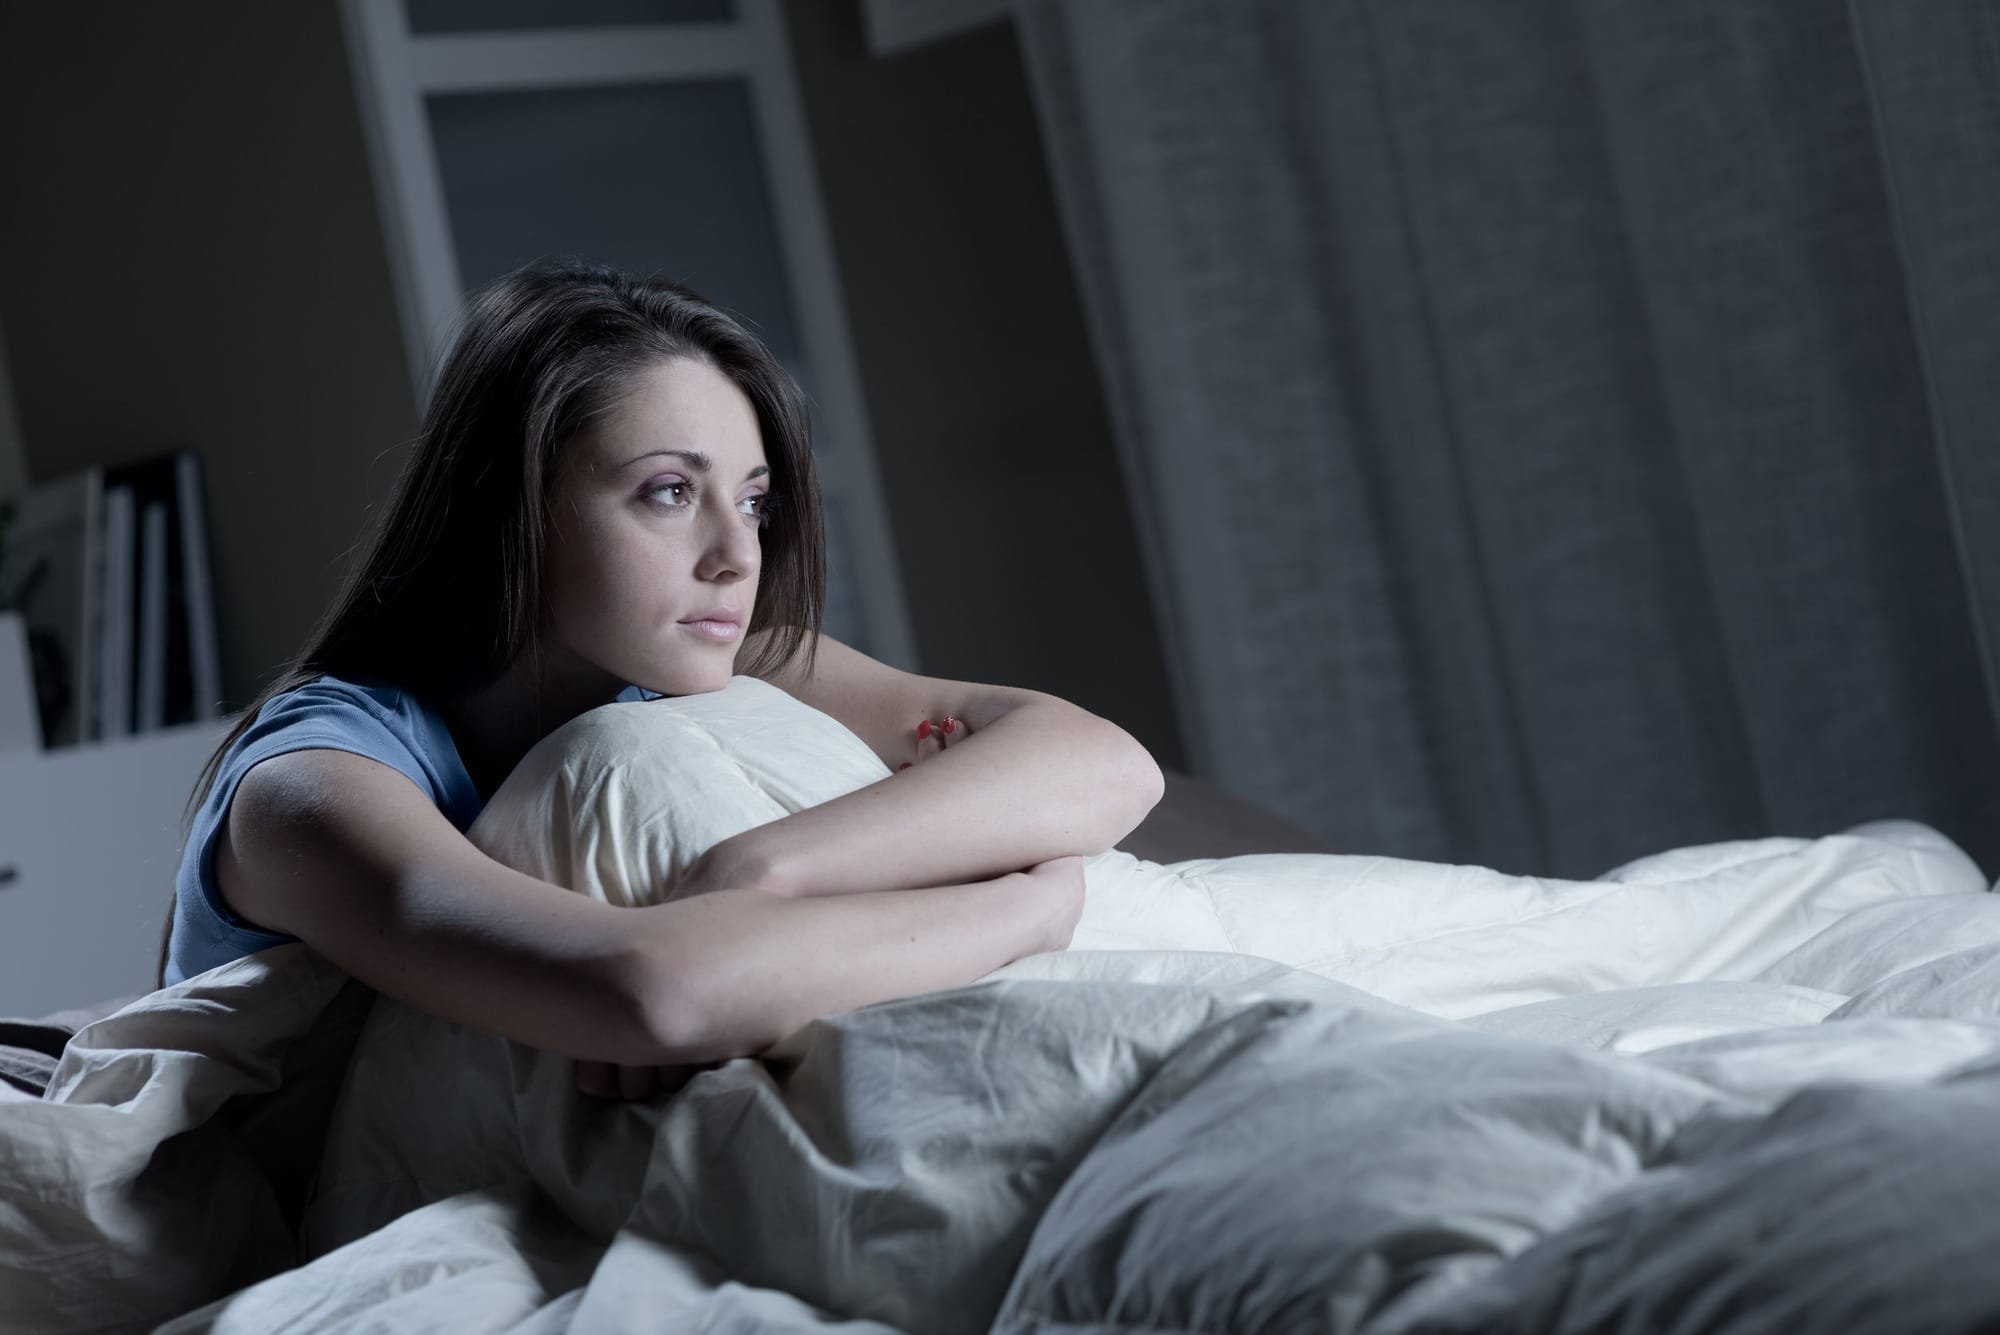 دراسة تربط الأرق والنوم المتقطع والإرهاق بارتفاع احتمالات الإصابة بـ"كوفيد-19" الشديد